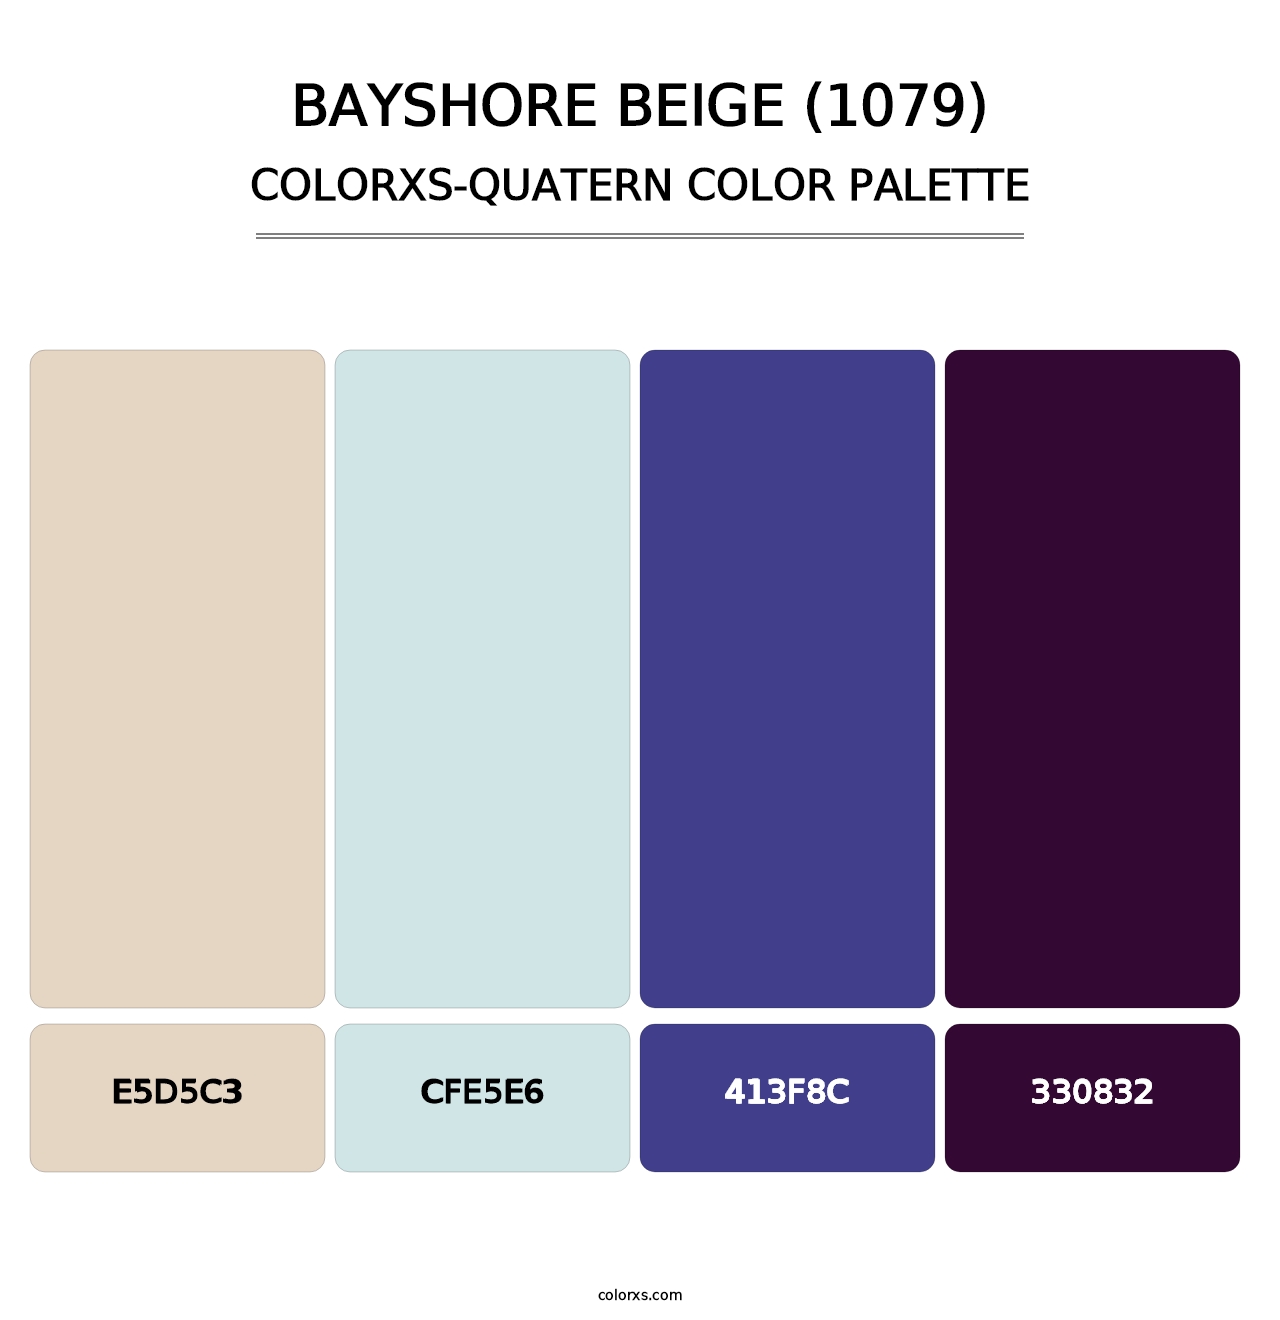 Bayshore Beige (1079) - Colorxs Quatern Palette